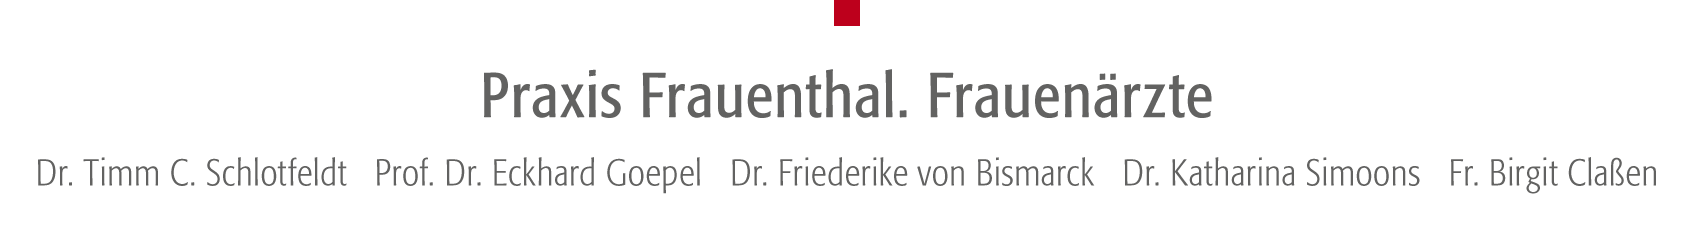 Ihr Ärzteteam Praxis Frauenthal - Dr. Timm C. Schlotfeldt, Prof. Dr. Eckhard Goepel, Dr. Friederike von Bismarck, Dr. Katharina Simoons, Birgit Claßen